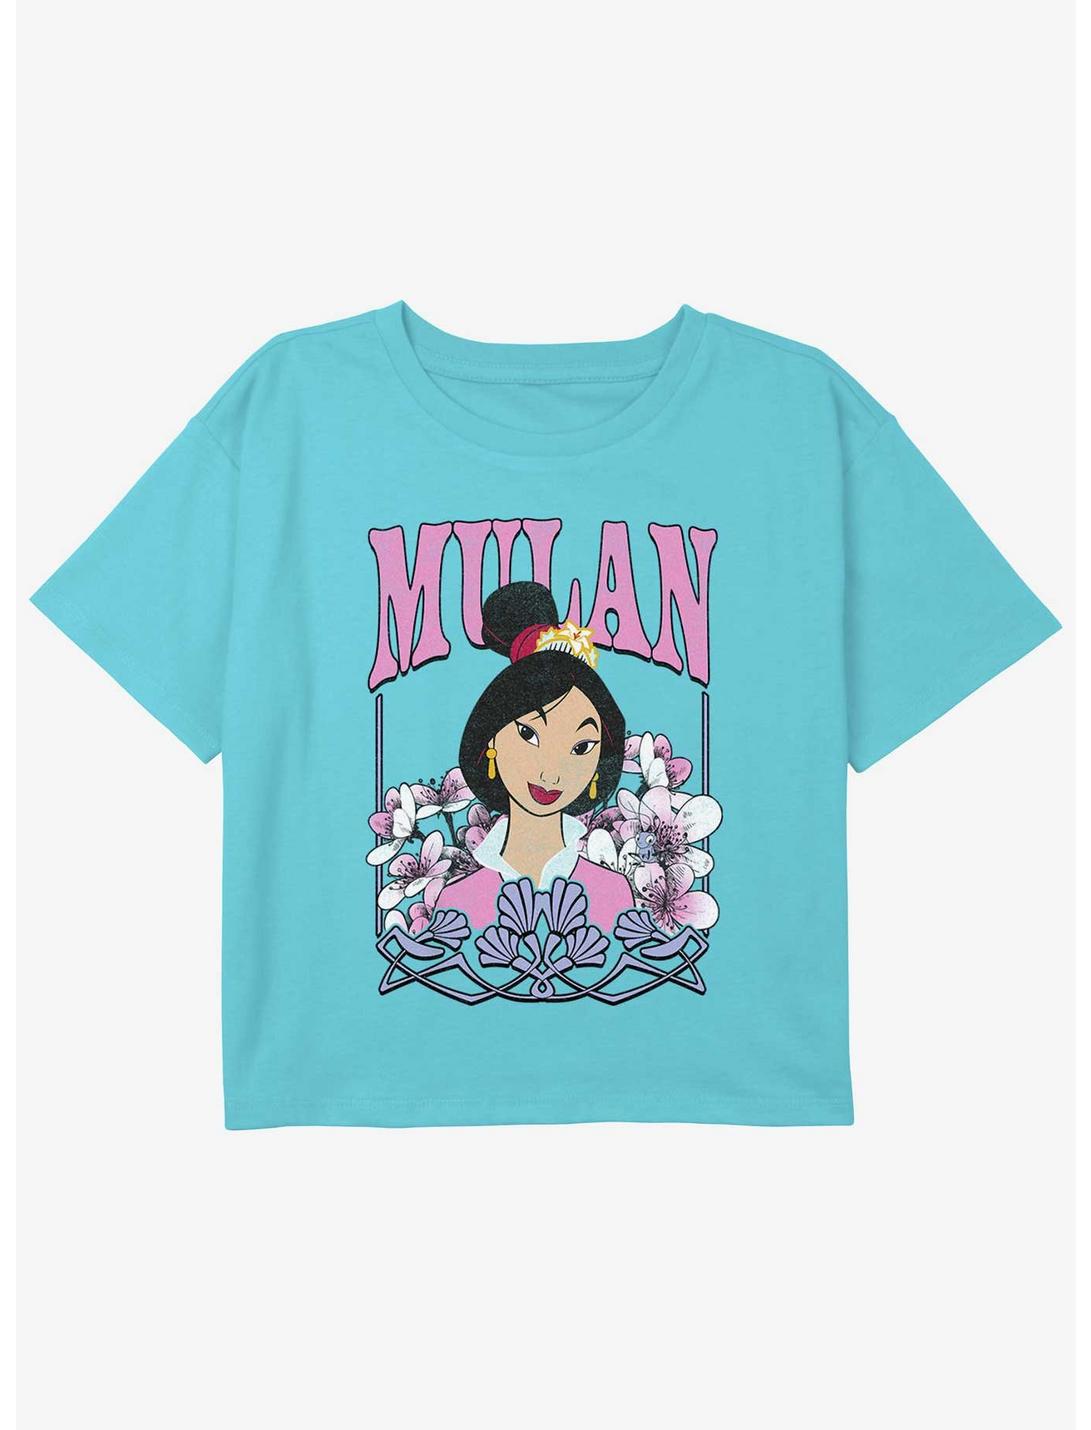 Disney Mulan Mulan Nouveau Girls Youth Crop T-Shirt, BLUE, hi-res